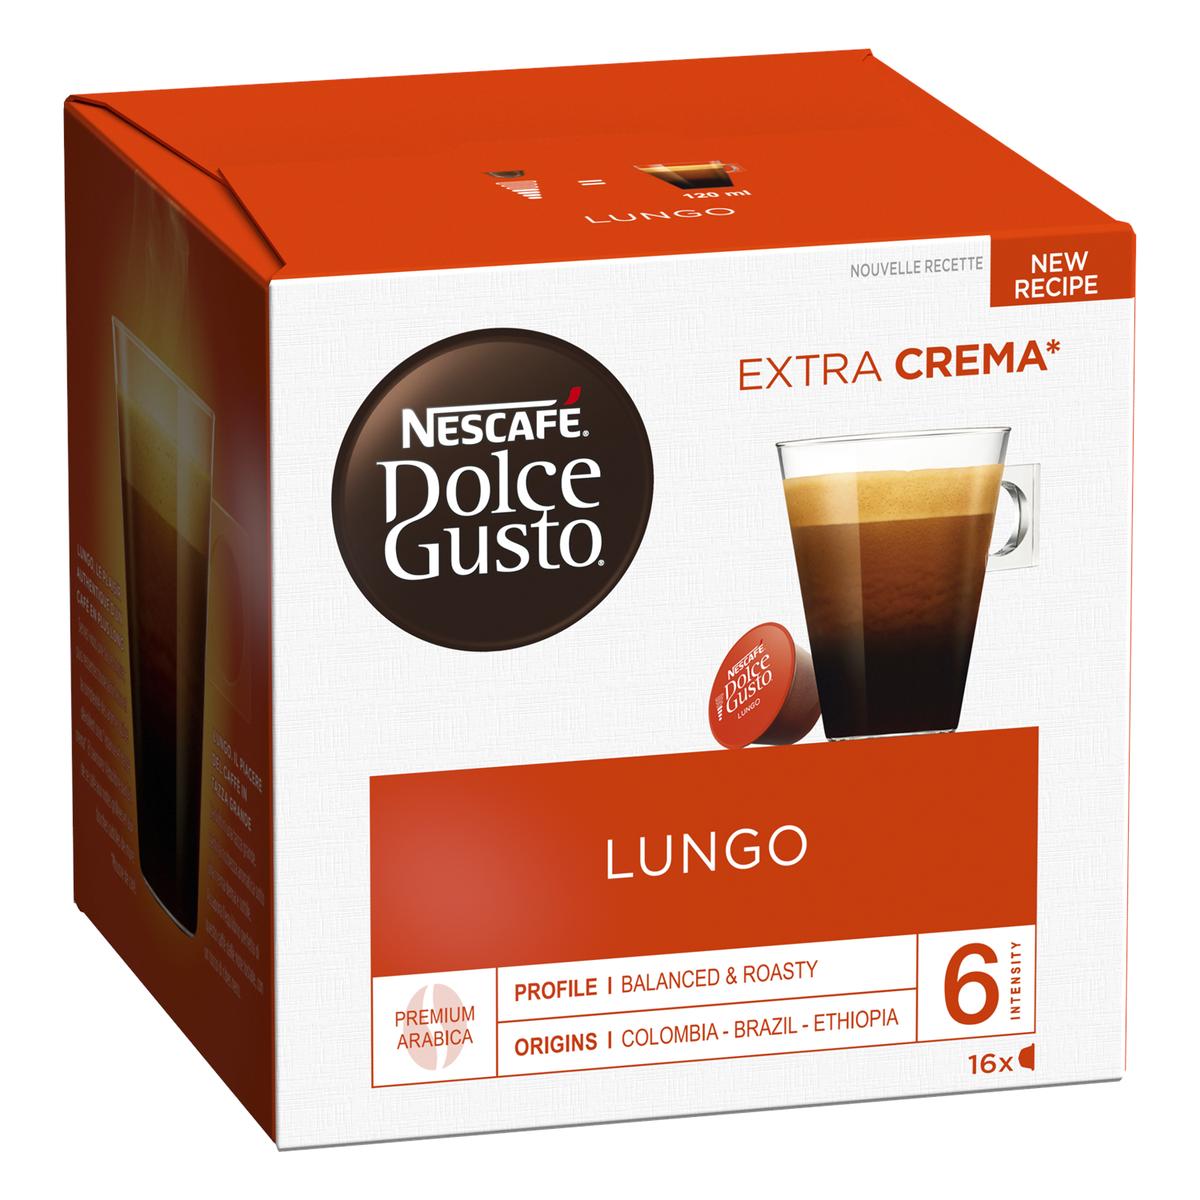 Achat / Vente Nescafe Dolce Gusto Café capsules Lungo, 16